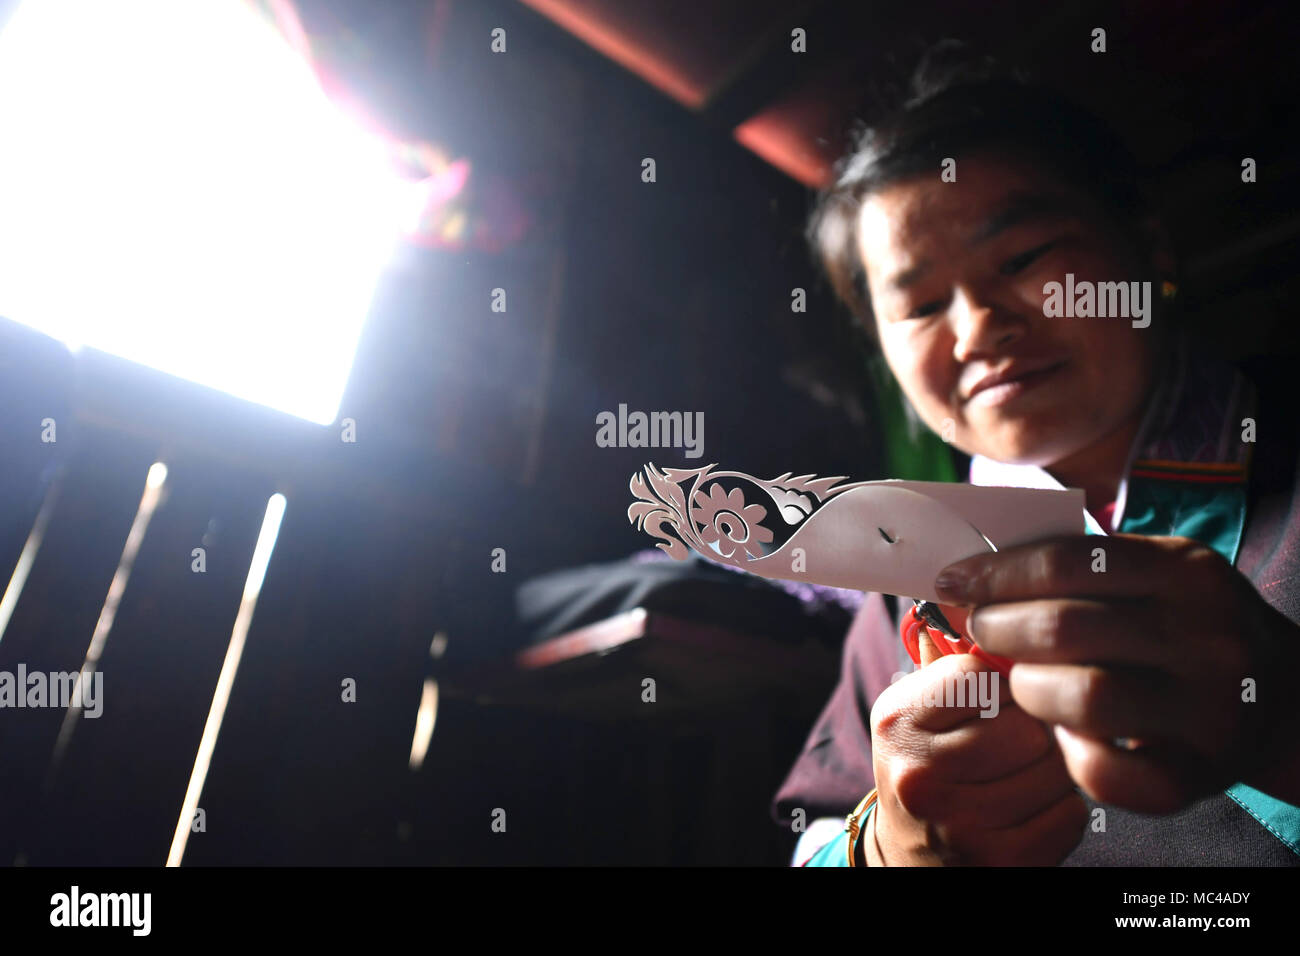 (180413) - SANJIANG, April 13, 2018 (Xinhua) - Gewehr Peiyi macht Papier - Ausschnitte für Stickerei in Yongwei Dorf, Liuzhou Stadt im Süden Chinas Autonomen Region Guangxi Zhuang, 12. April 2018. Trotz taub und stumm, der 43 Jahre alte Waffe ist für ihr Geschick in Stickerei bekannt. Liebevolle Stickerei, da sie jung war, Gewehr, die Meister sowohl Dong und Miao Sticktechniken, erwarb Ruhm, nachdem sie viele Stickerei arbeitet mit vielfältigen Stilen und abstrakte Bilder erstellt. Vor vier Jahren, ihr Ehemann verstorben, so dass sie und ihre Tochter leben Miteinander. Die einheimischen Frauen Stockfoto